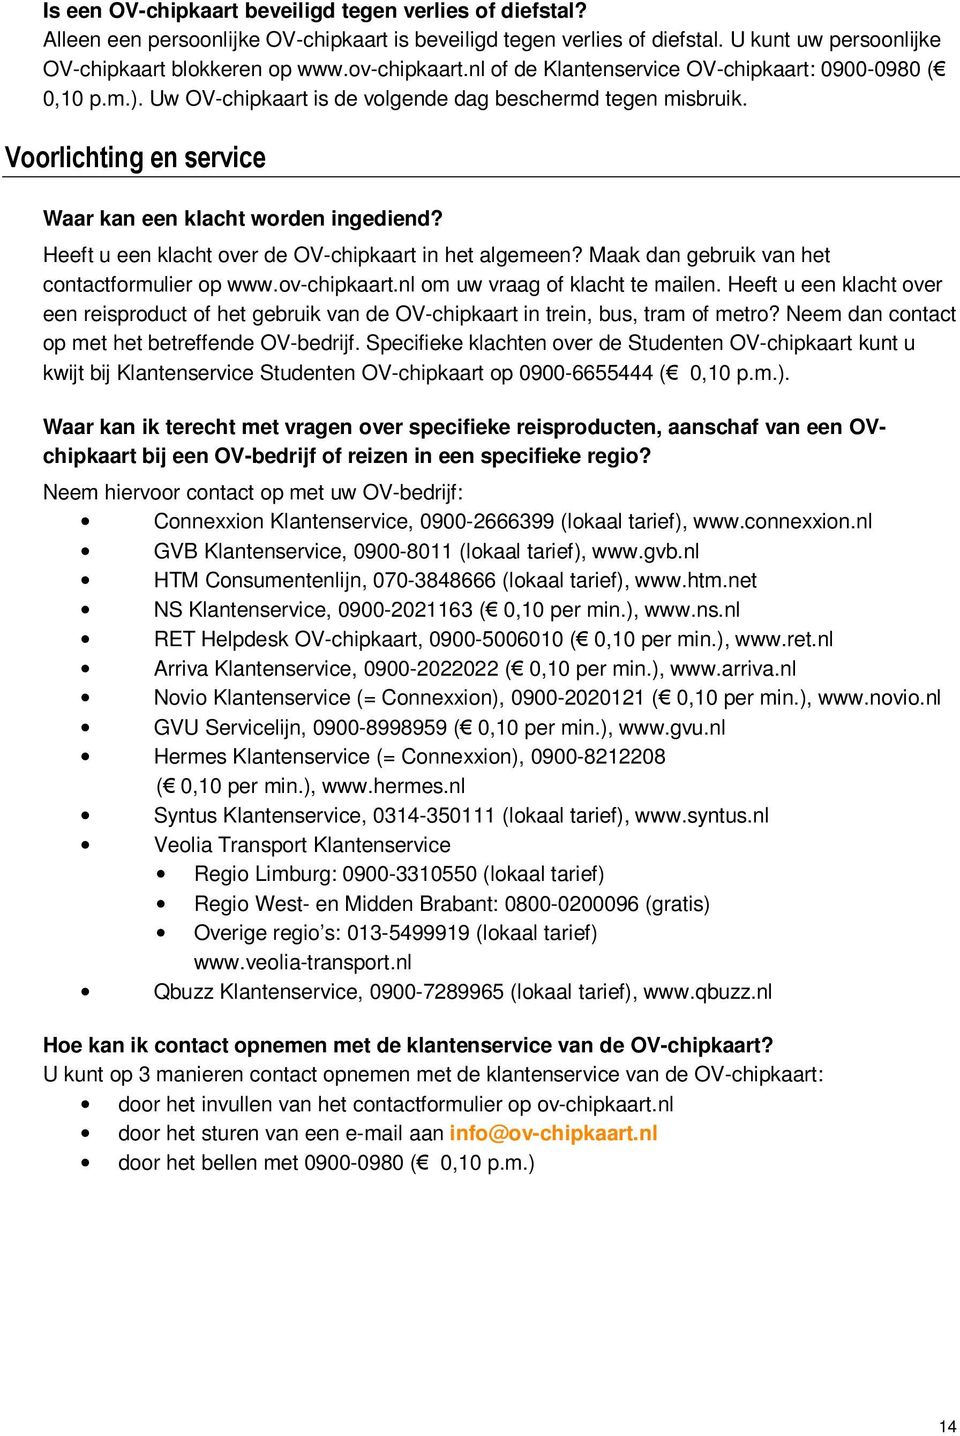 Heeft u een klacht over de OV-chipkaart in het algemeen? Maak dan gebruik van het contactformulier op www.ov-chipkaart.nl om uw vraag of klacht te mailen.